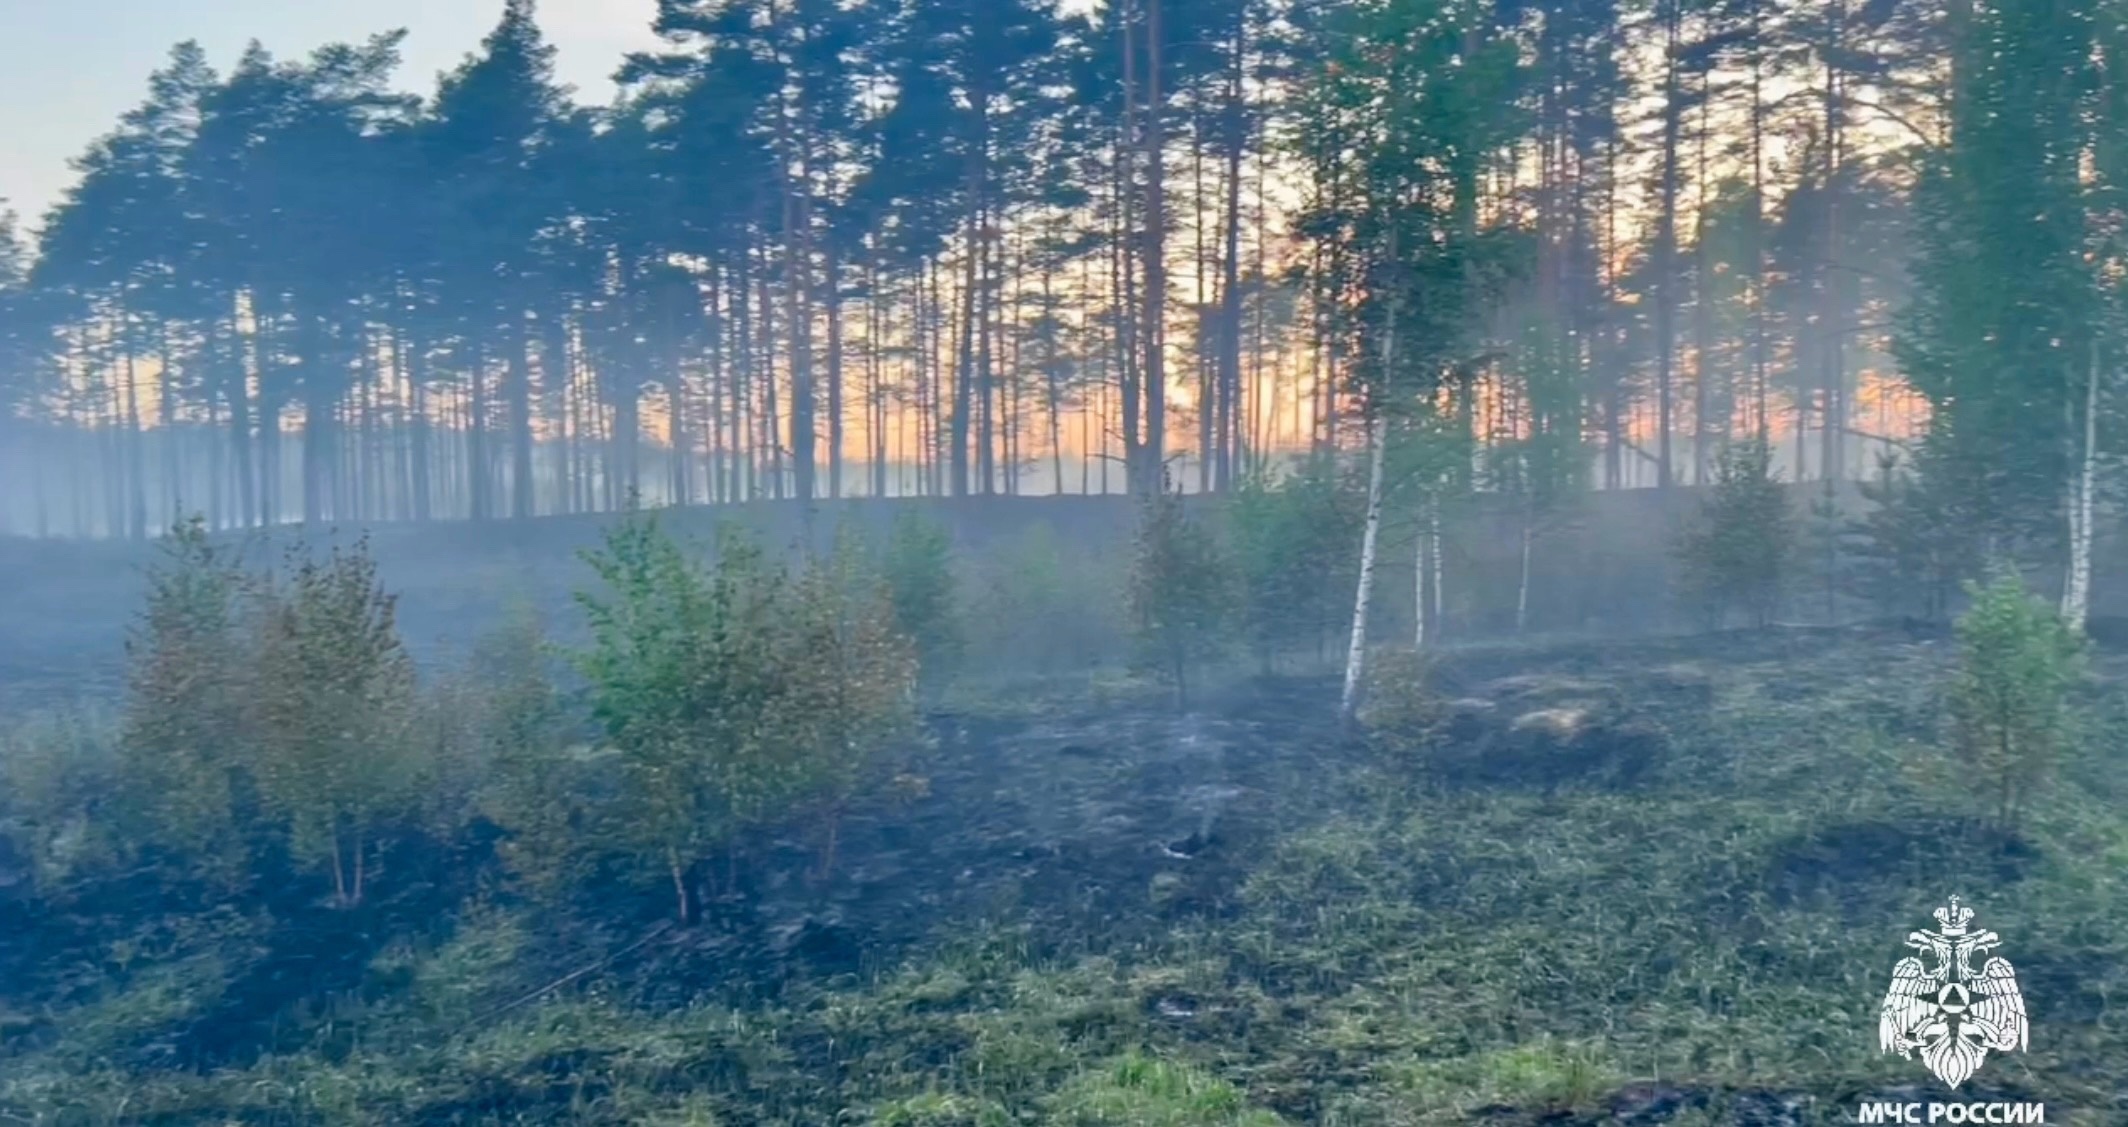 К тушению лесной подстилки в Тверской области привлекли пожарный поезд